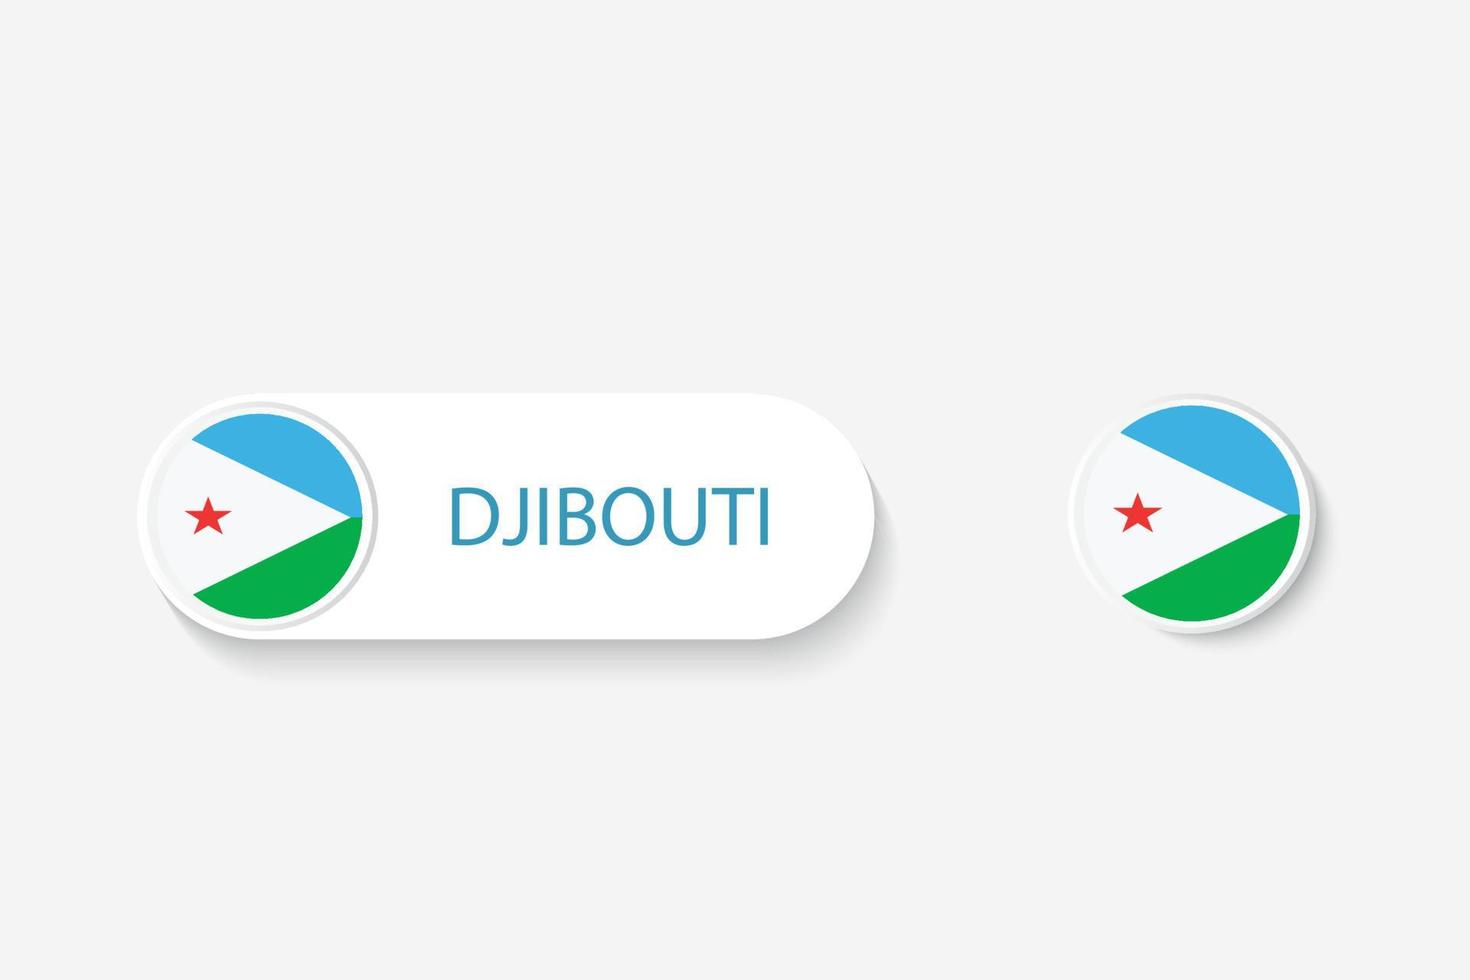 Djibouti knop vlag in illustratie van ovaal gevormd met woord van djibouti. en knop vlag djibouti. vector